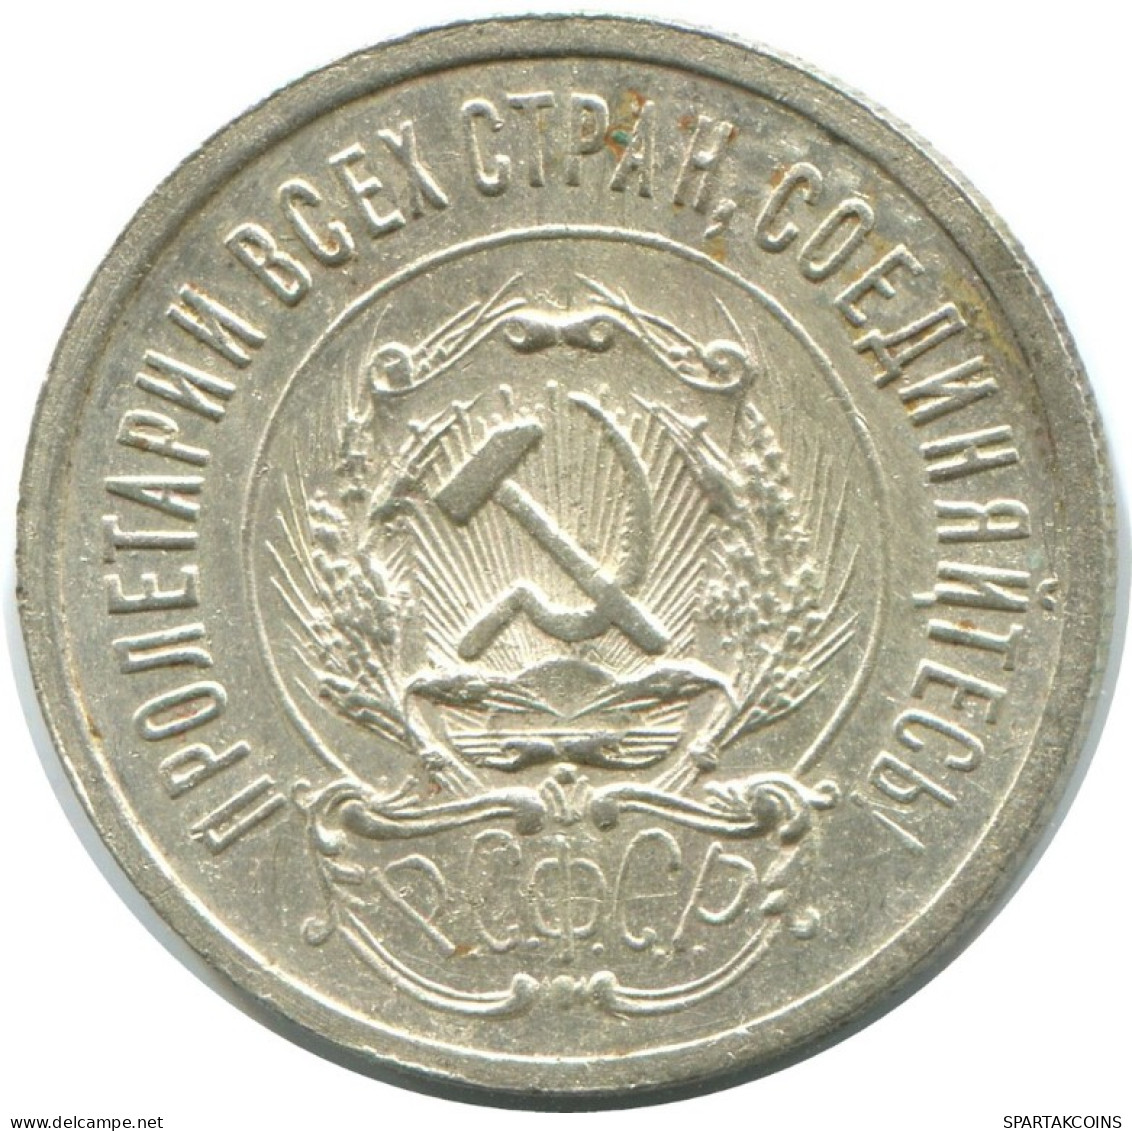 20 KOPEKS 1923 RUSIA RUSSIA RSFSR PLATA Moneda HIGH GRADE #AF712.E.A - Russland